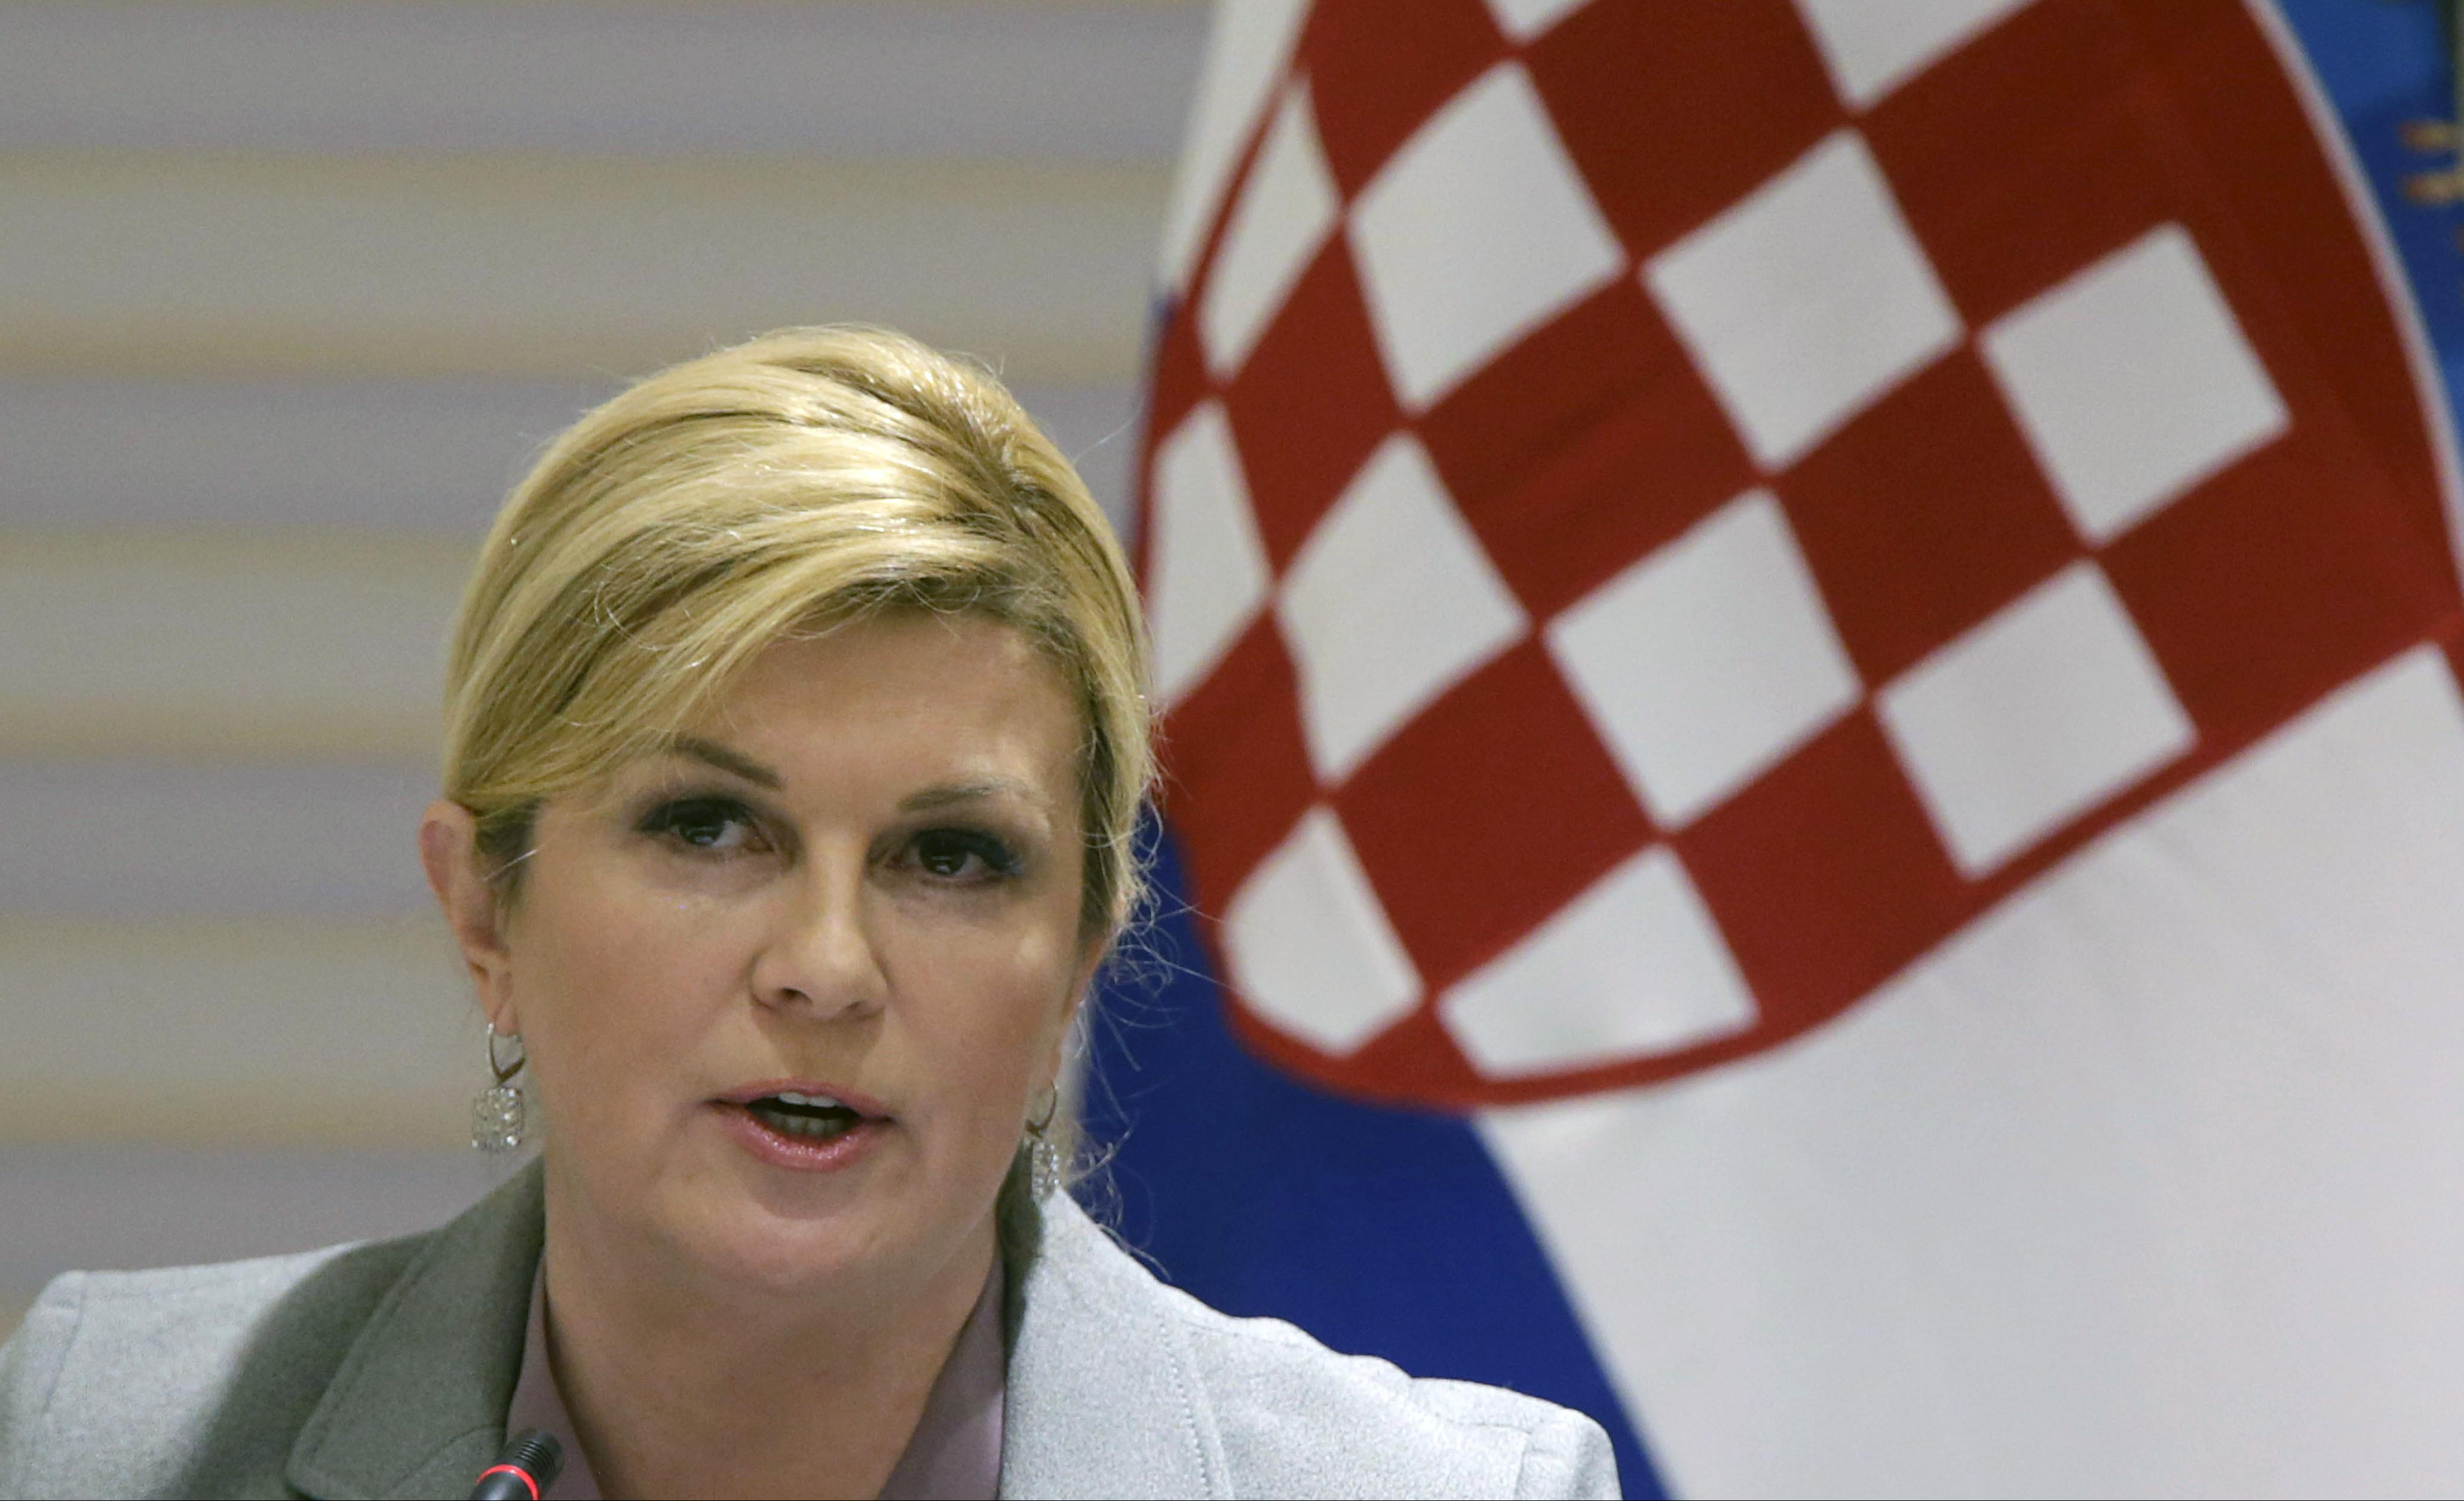 KOLINDA DOŽIVELA SAOBRAĆAJKU! Na nezgodnom i uskom putu naleteli su na dva automobila... Evo kako je prošla predsednica Hrvatske!